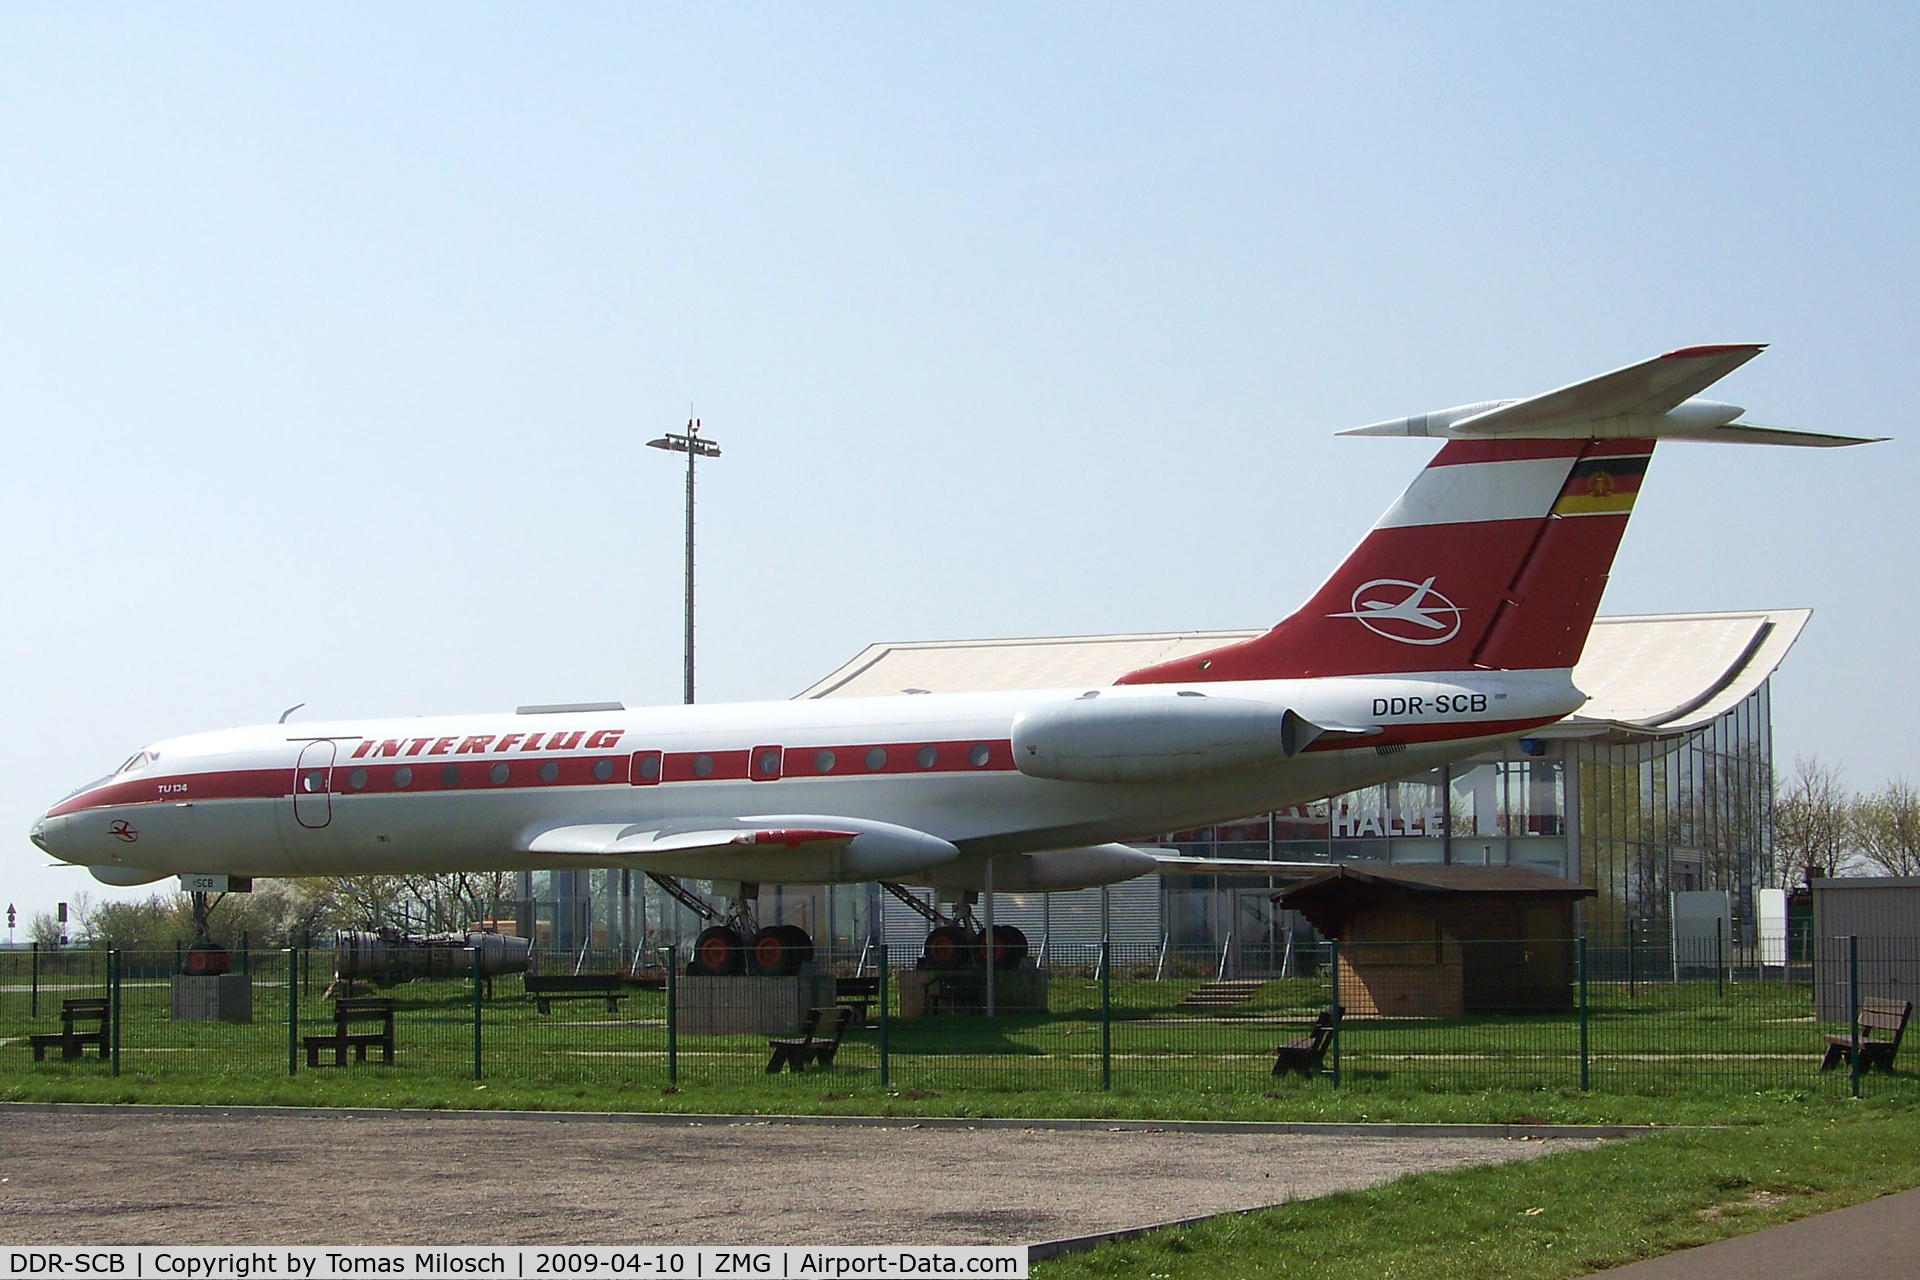 DDR-SCB, 1968 Tupolev Tu-134 C/N 8350503, Magdeburg (ZMG/EDBM), Germany